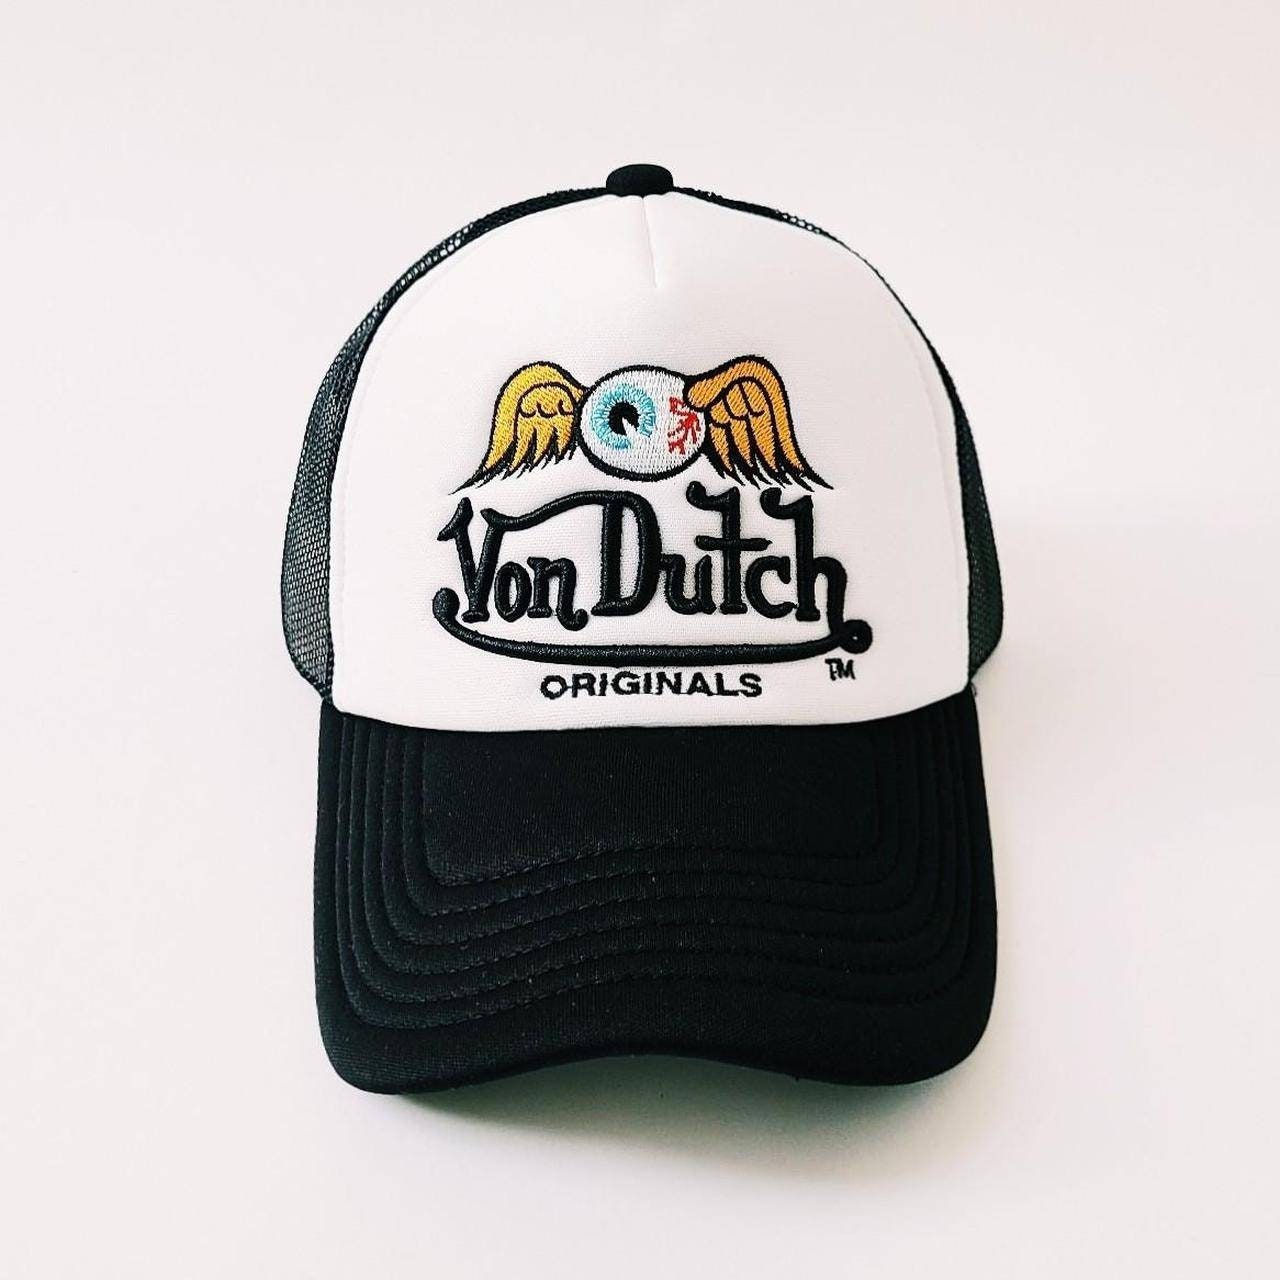 Von Dutch - デニム/ジーンズ